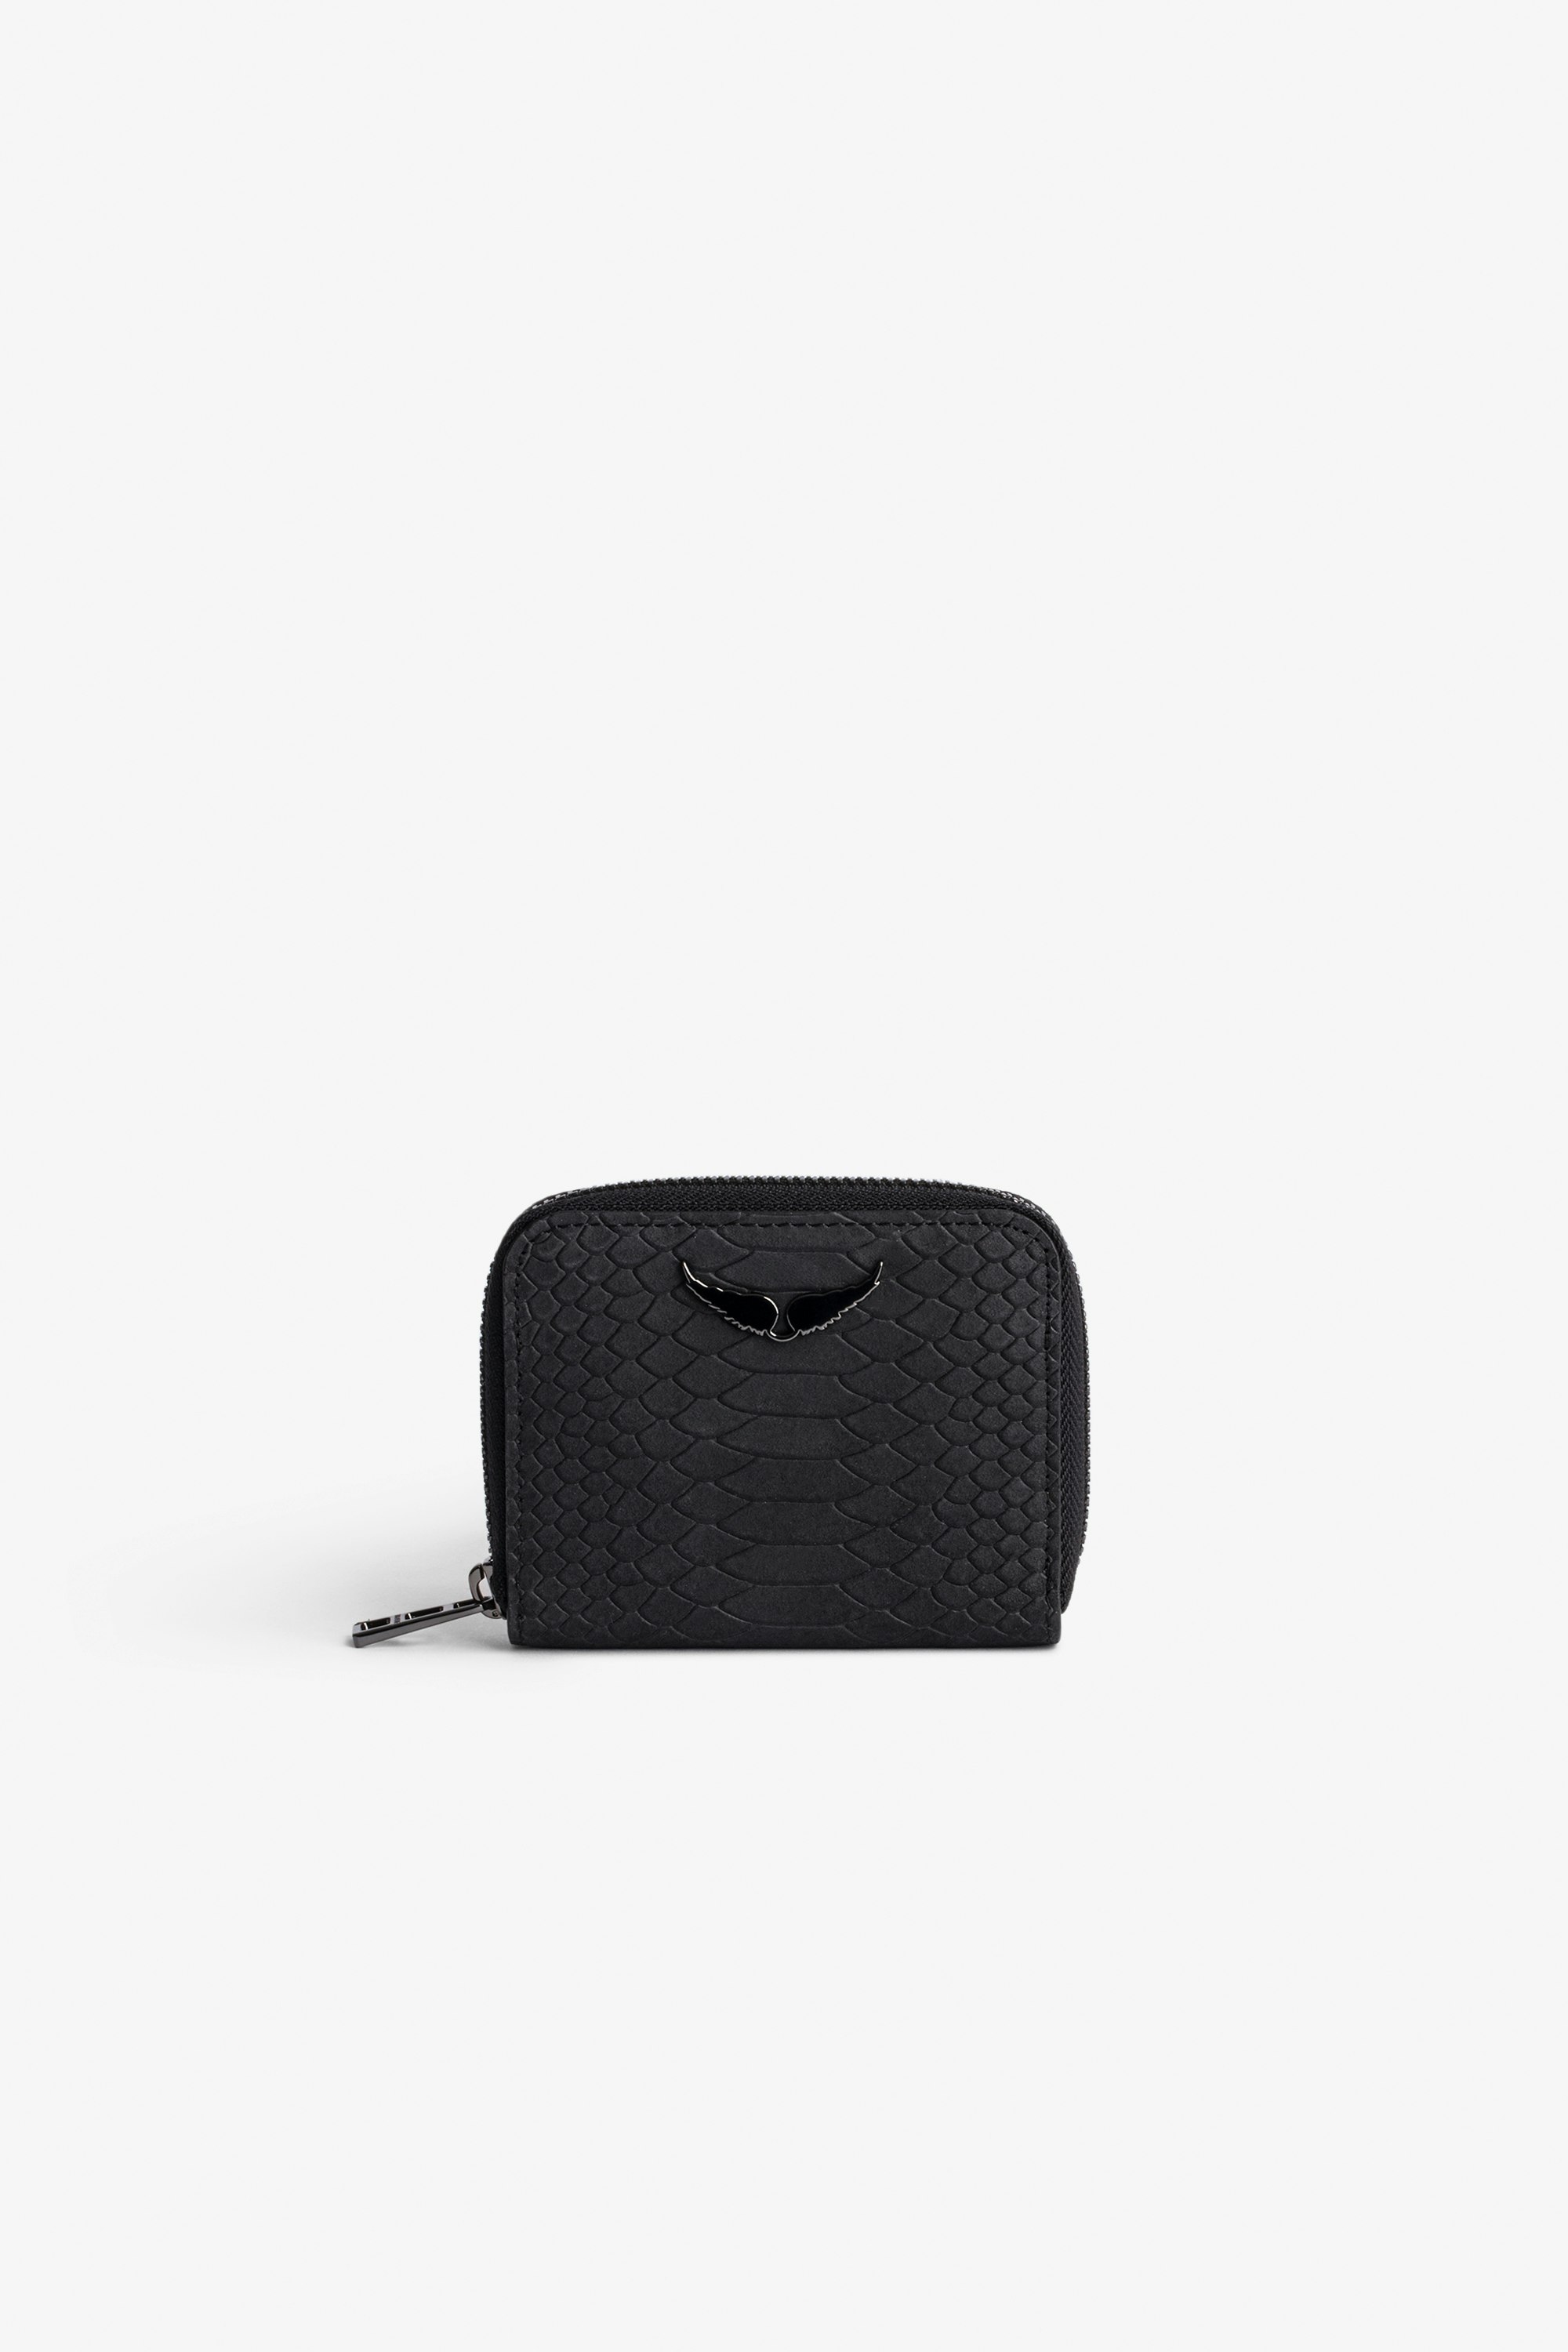 Portemonnaie Mini ZV - Damen-Portemonnaie aus schwarzem Leder in Python-Optik